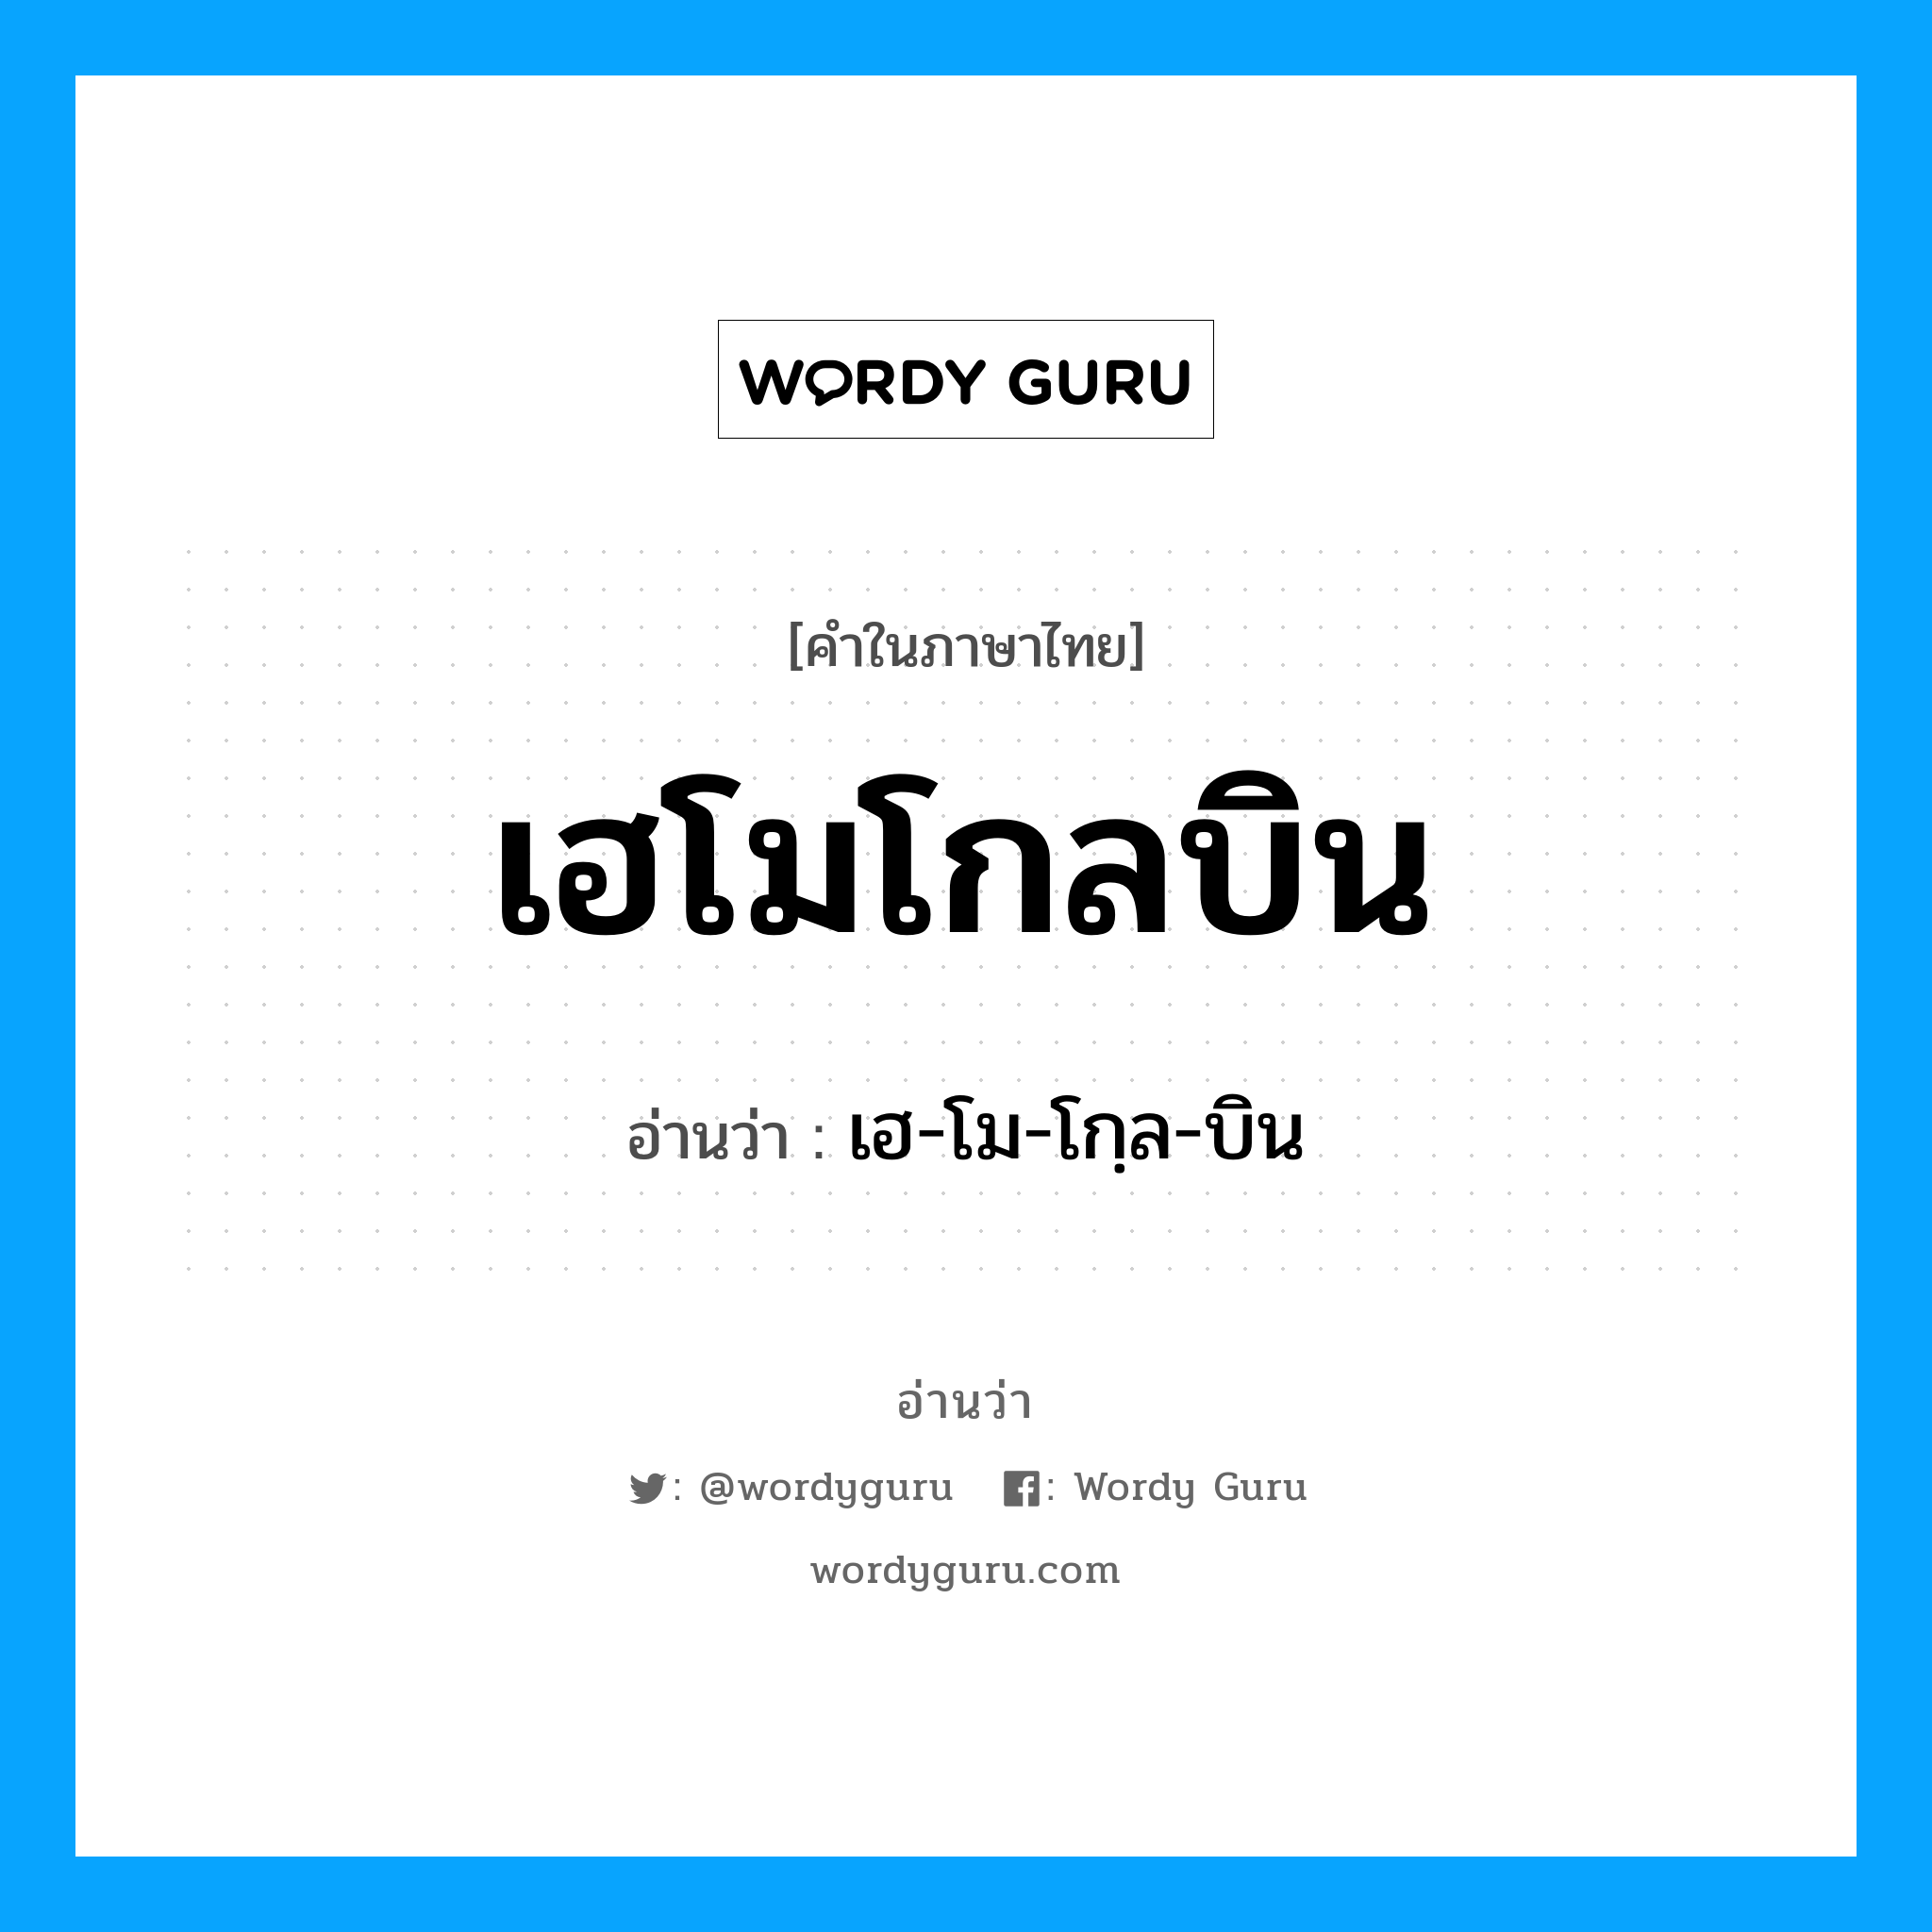 เฮ-โม-โกฺล-บิน เป็นคำอ่านของคำไหน?, คำในภาษาไทย เฮ-โม-โกฺล-บิน อ่านว่า เฮโมโกลบิน